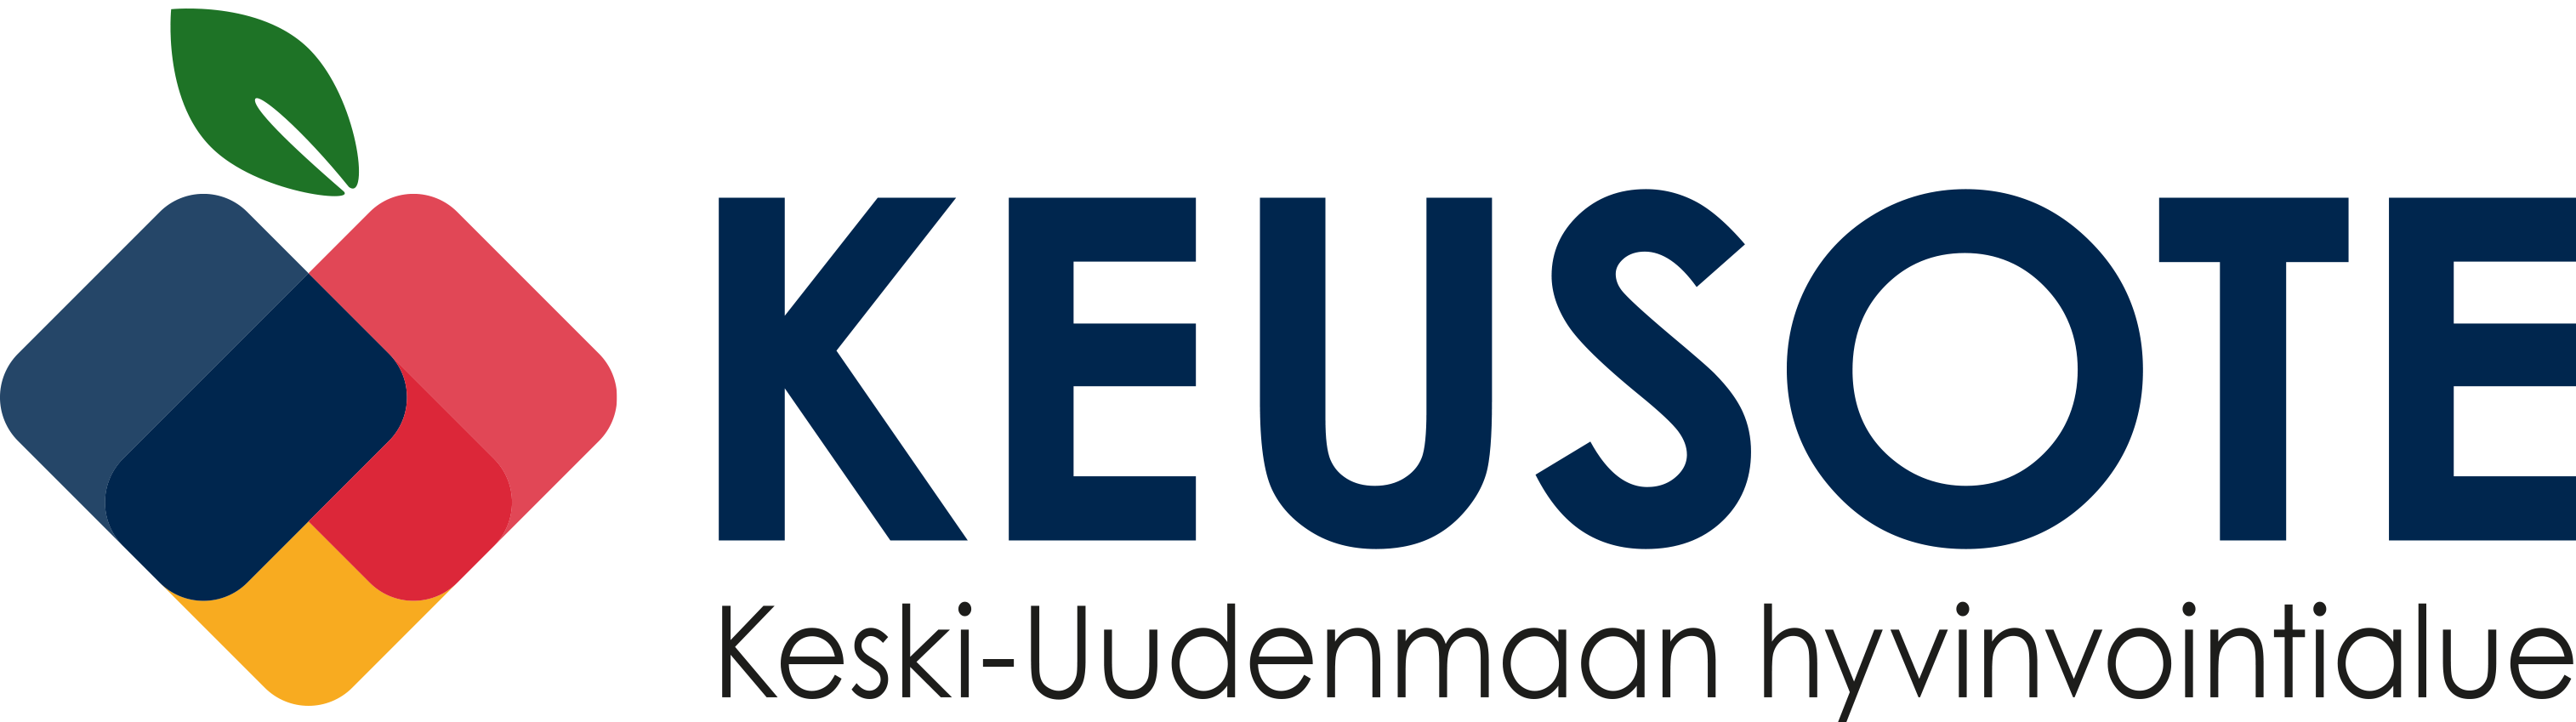 Kesuote's logo